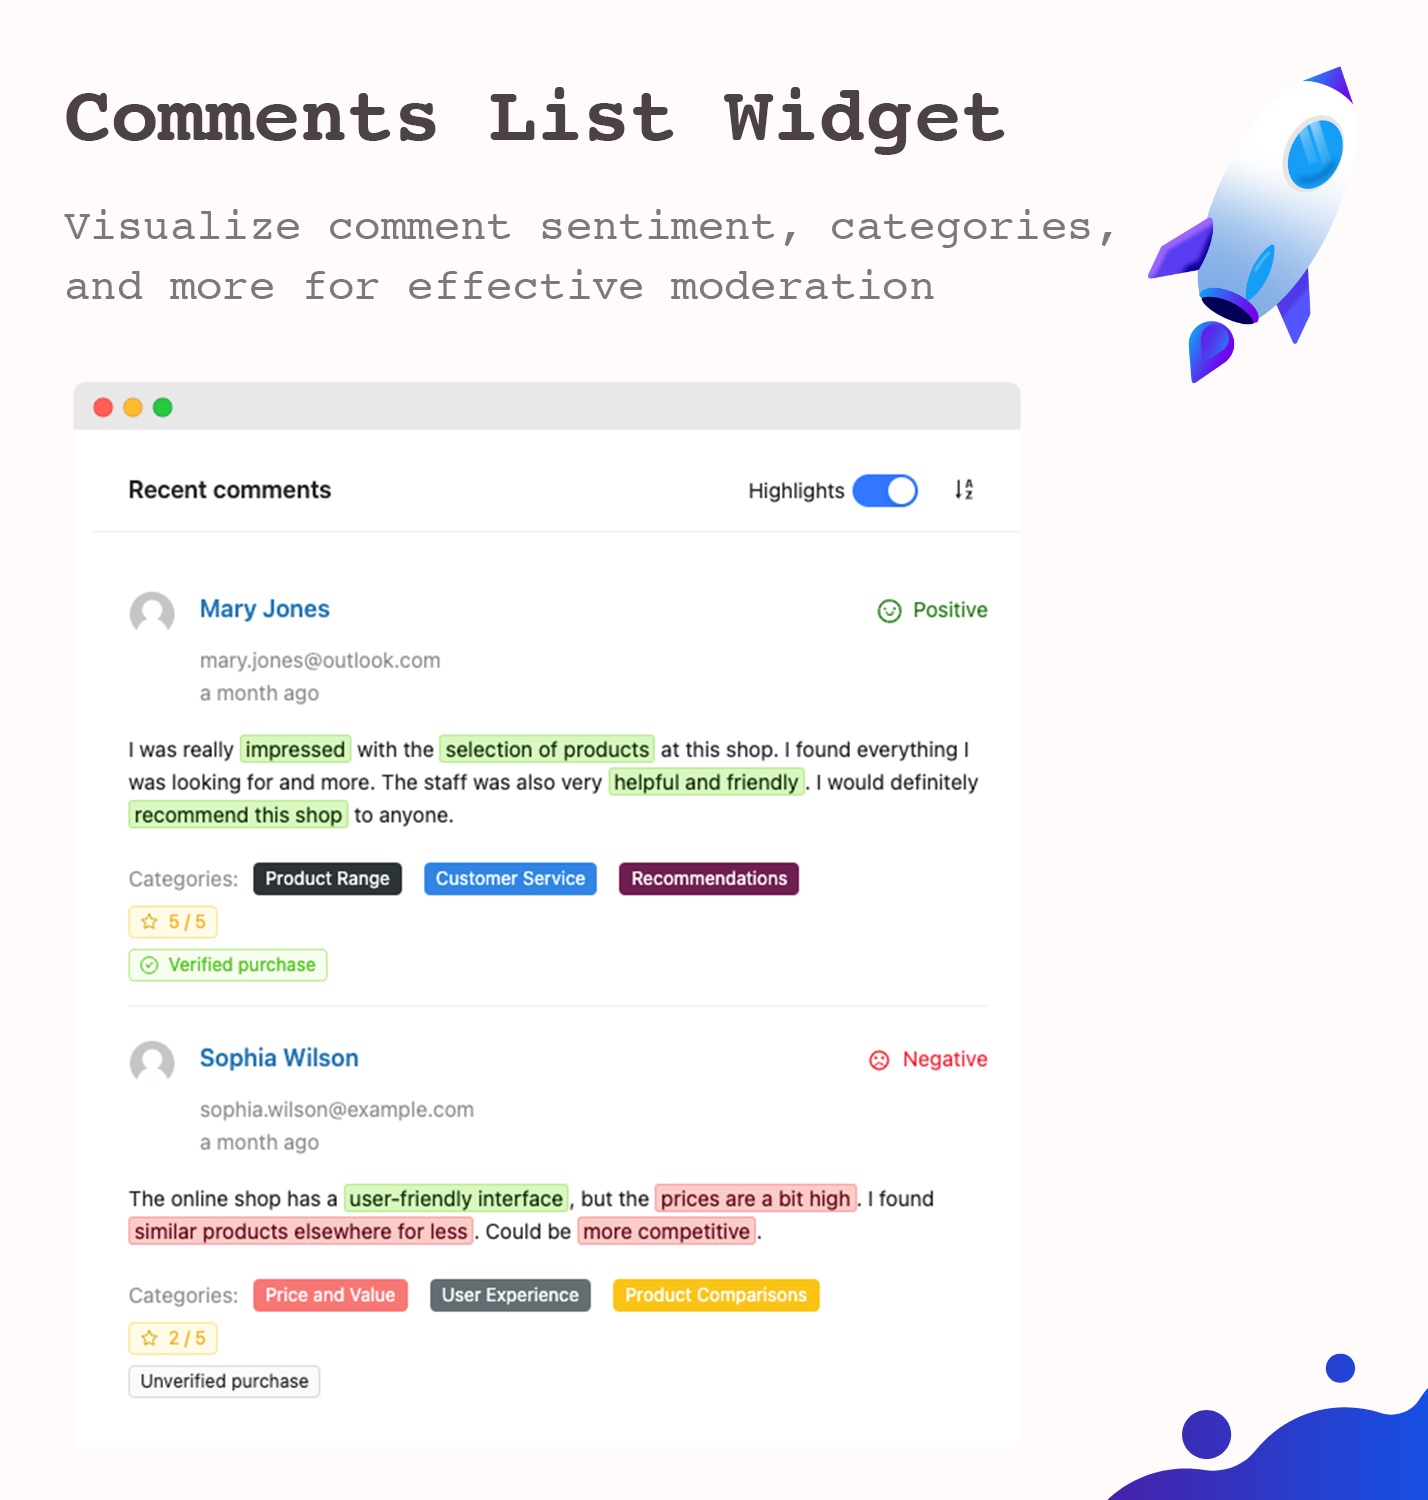 Comments list widget